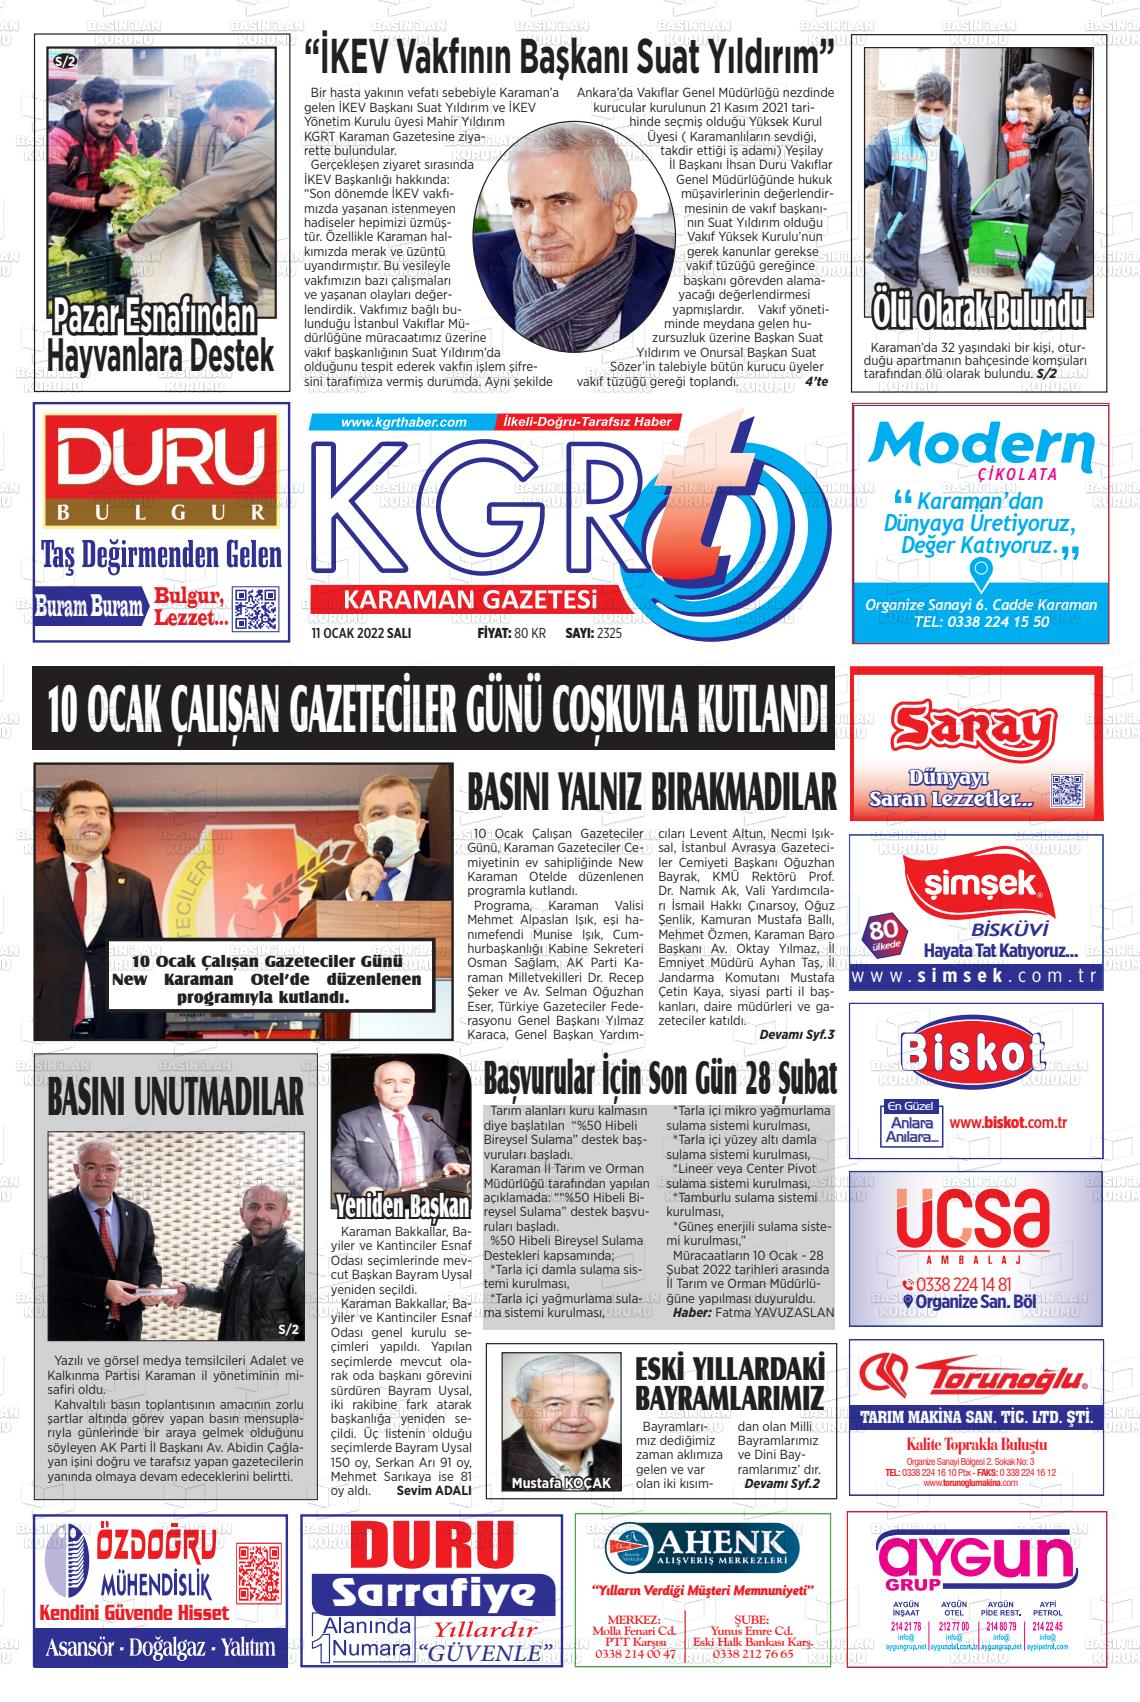 13 Ocak 2022 Kgrt Karaman Gazete Manşeti